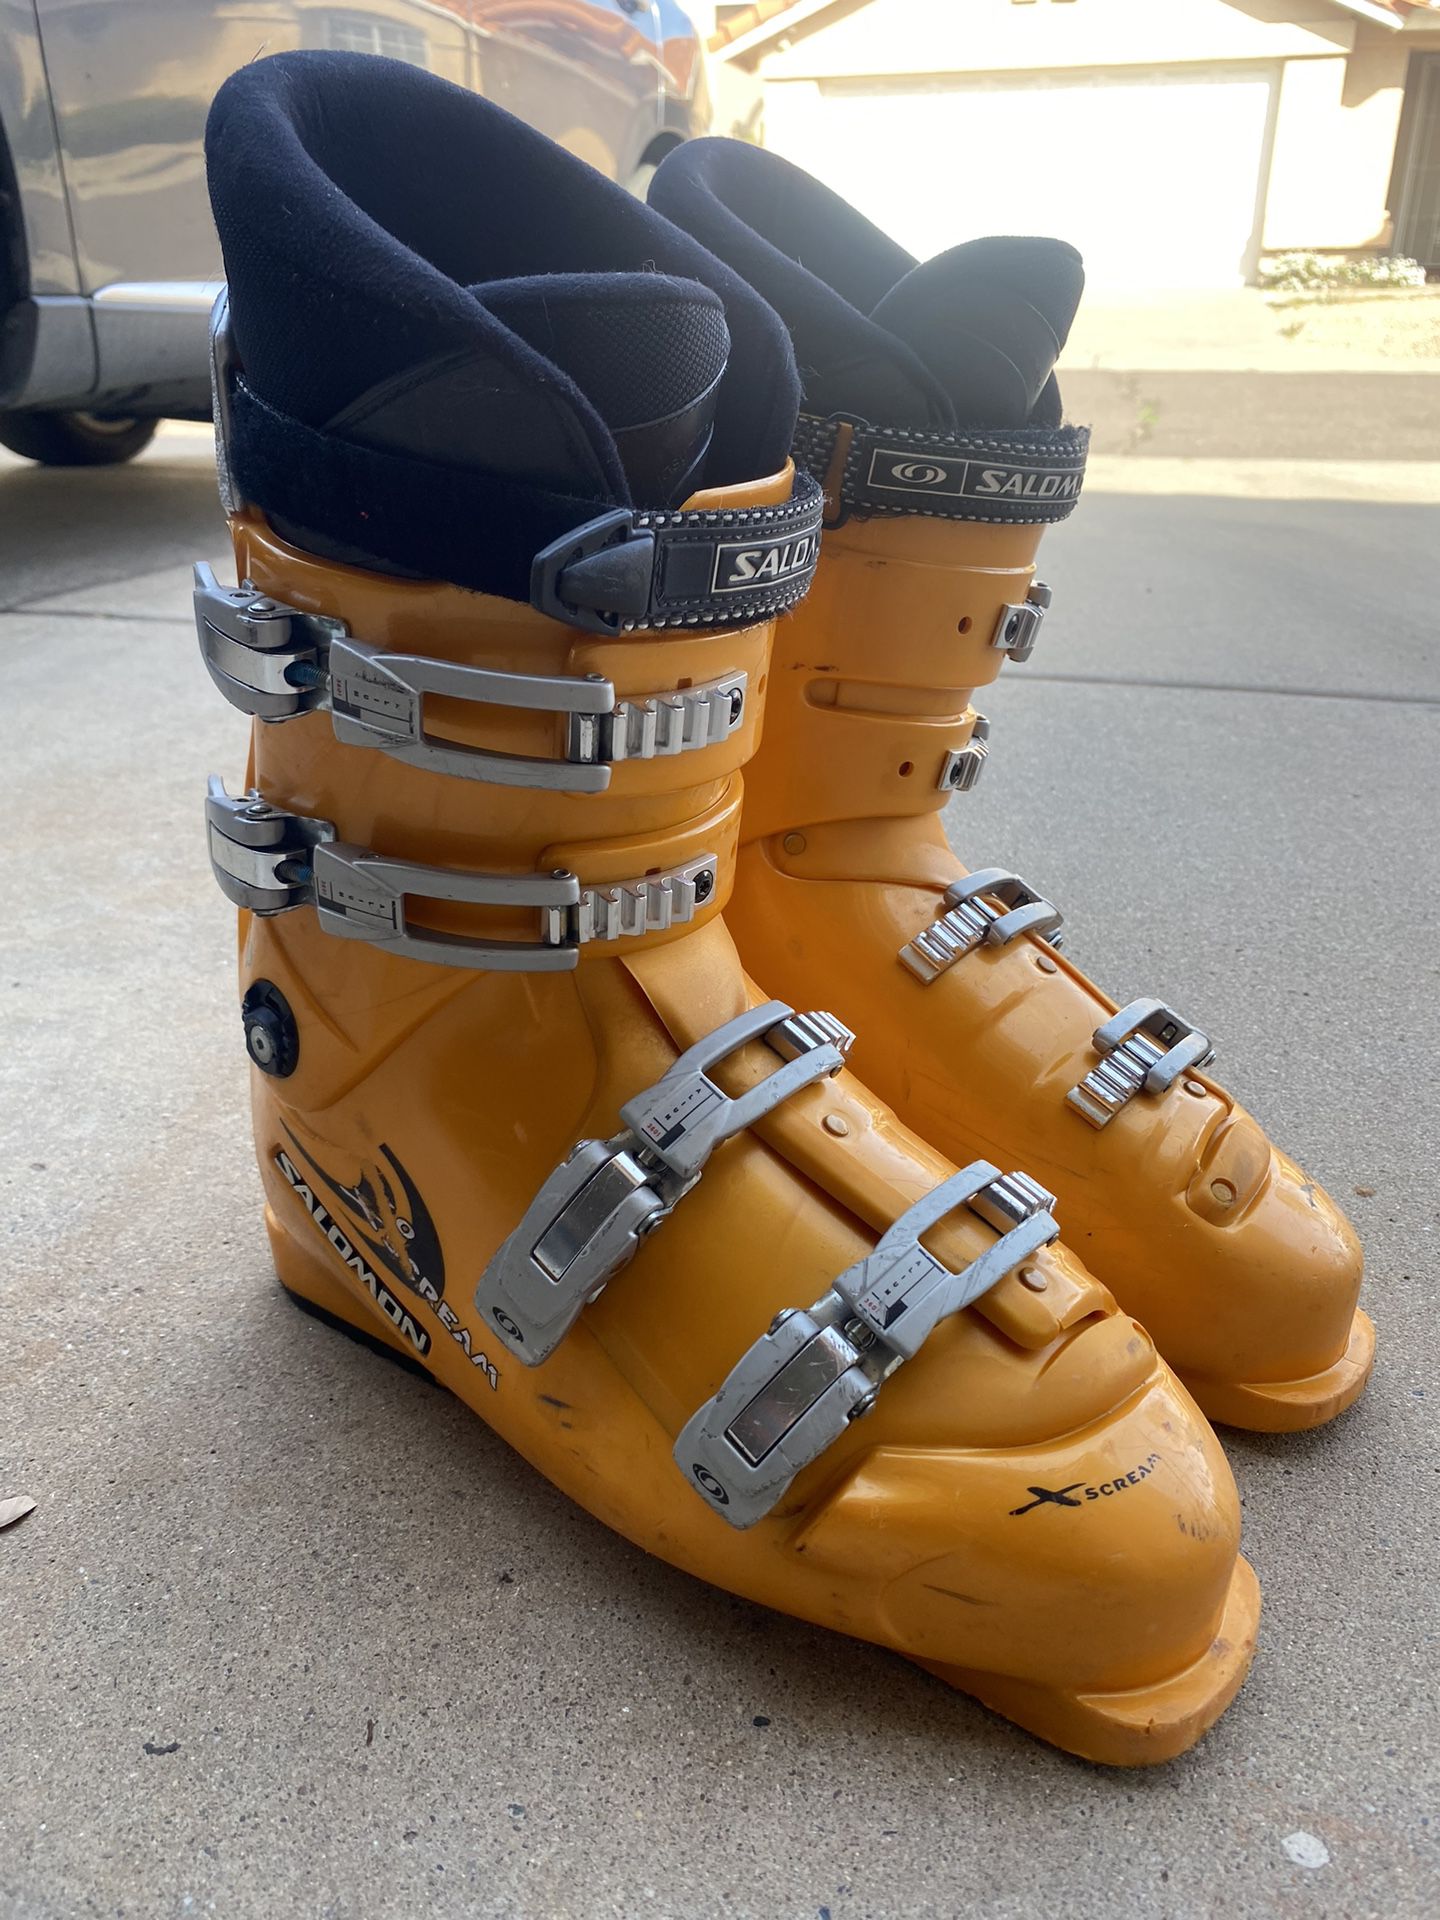 Salomon 7.0 XScream Ski Boots 348mm Mens 13/14